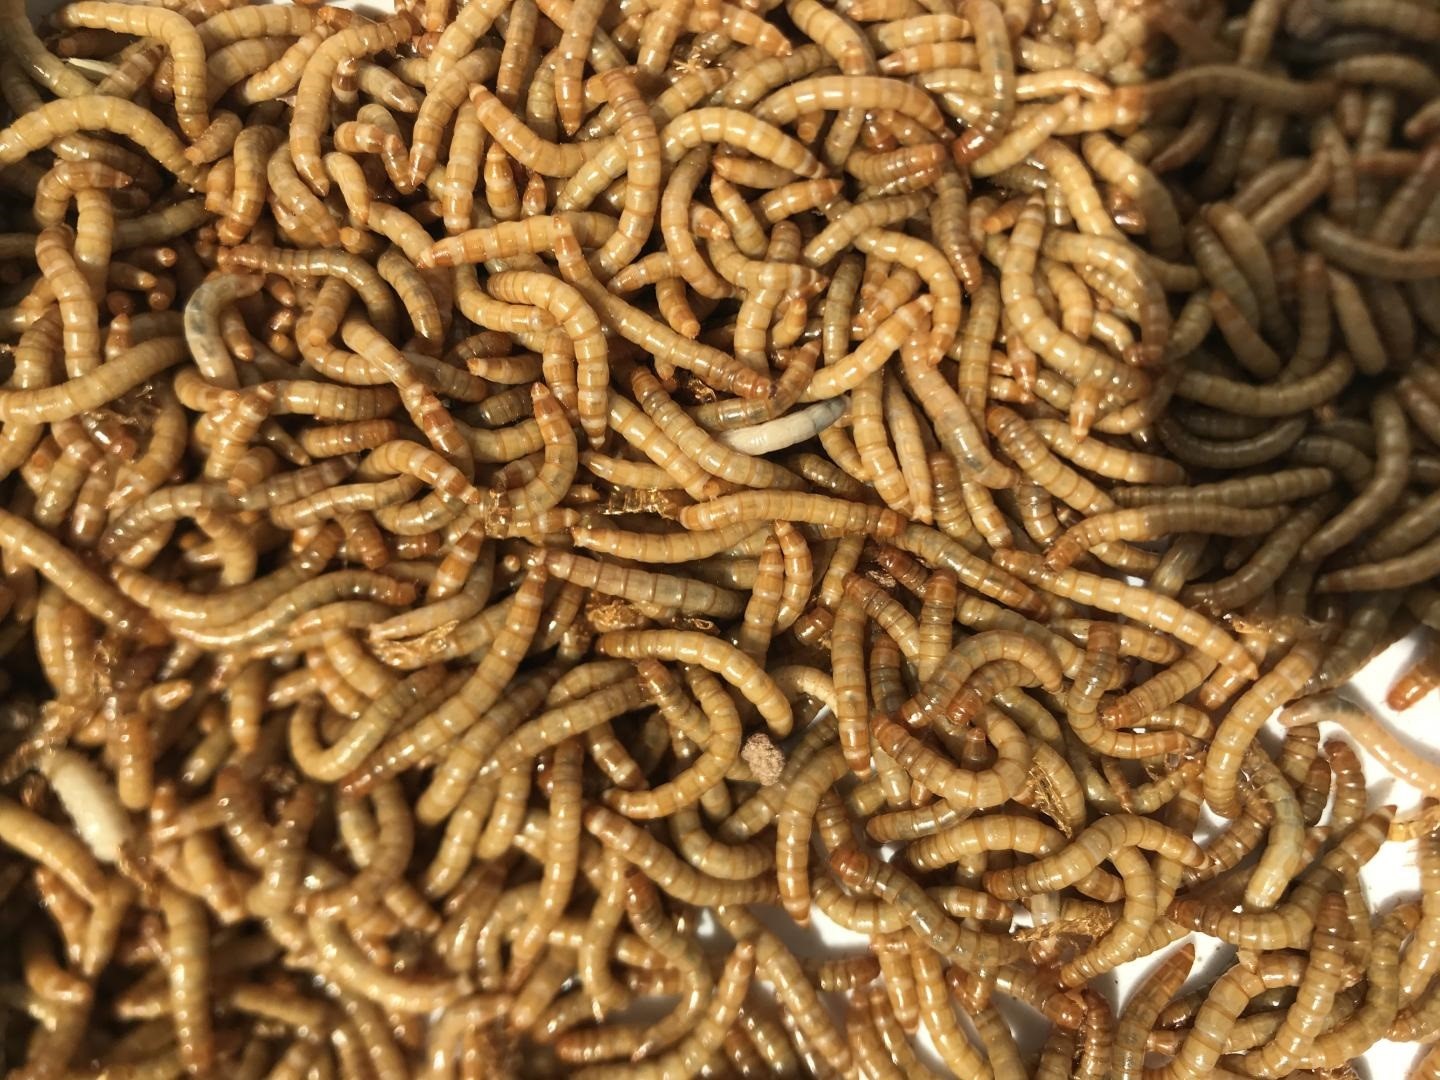 Científicos han obtenido nueva evidencia de que un insecto, que antes se pasaba por alto, se muestra prometedor como fuente alternativa de proteínas: el gusano amarillo de la harina.